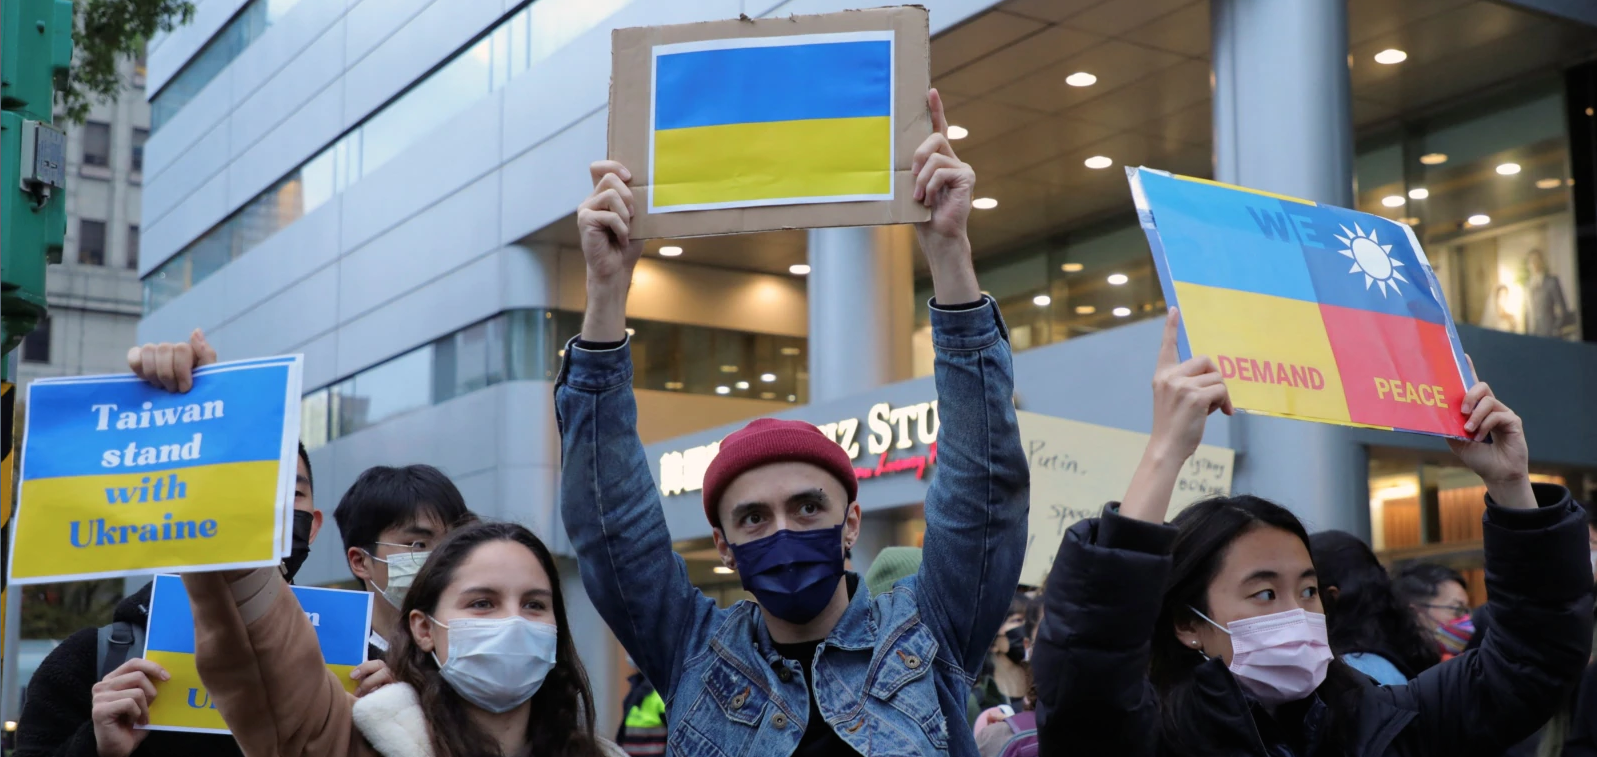 Manifestation de soutien à l'Ukraine et contre l'invasion russe à Taipei, le 25 février 2022. (Source : VOA)